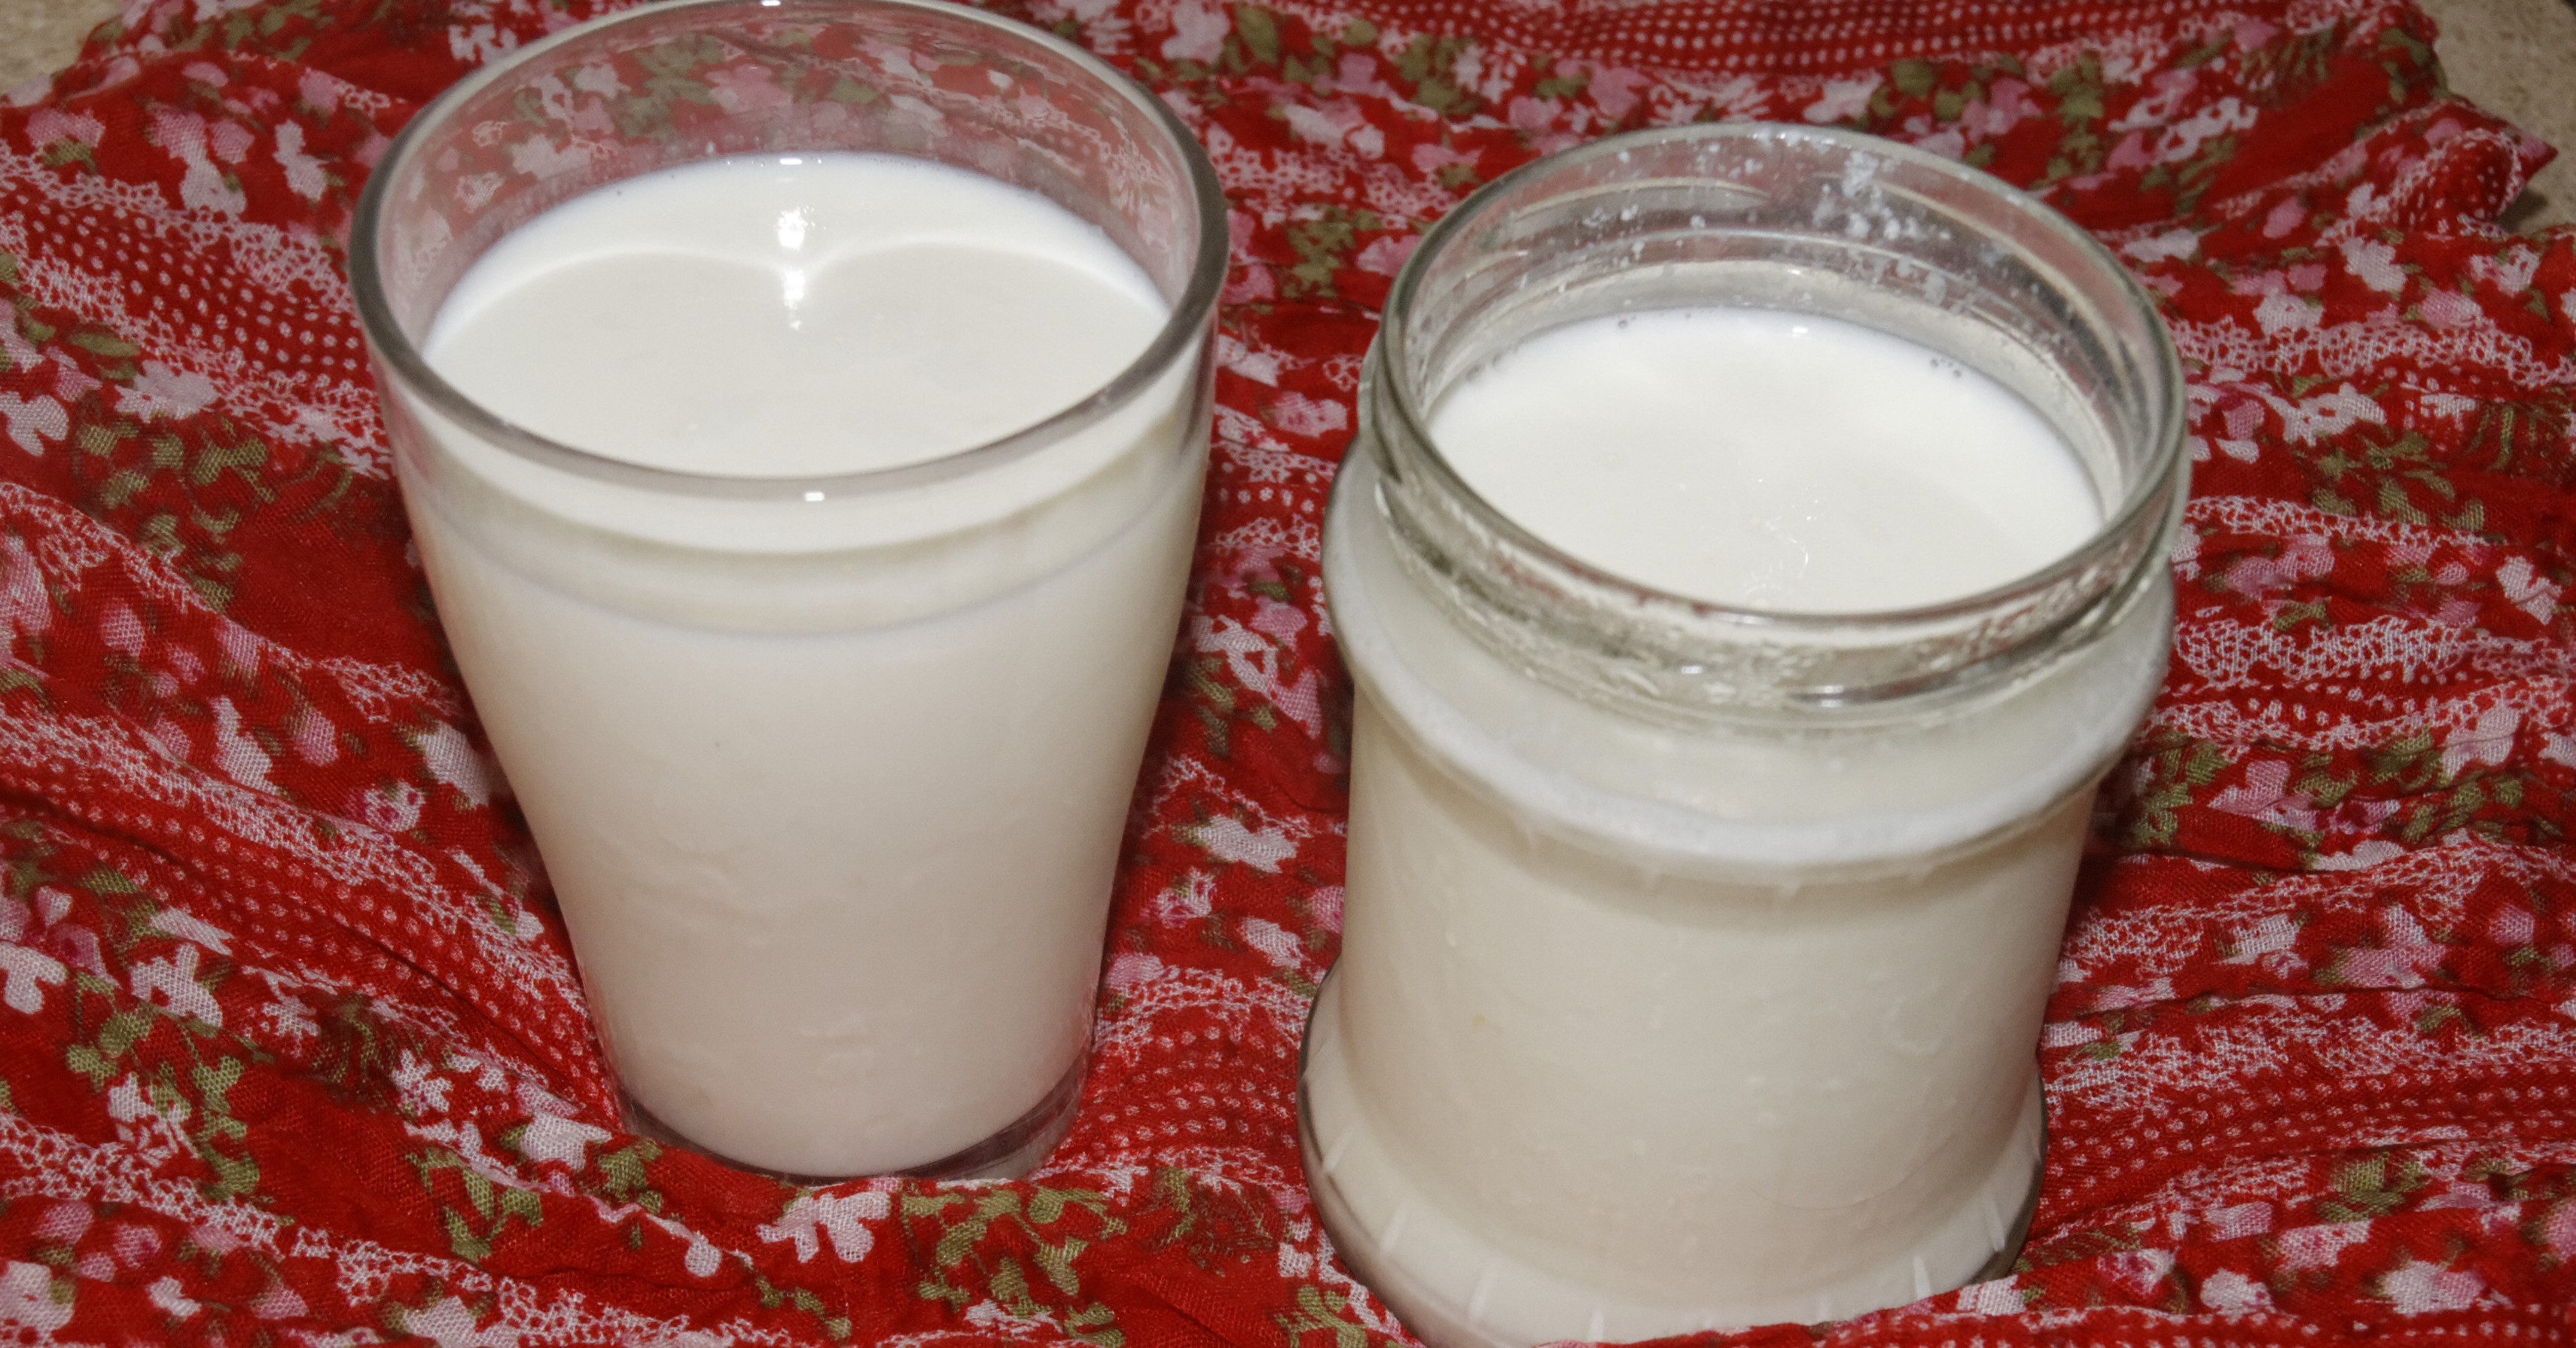 Domowy jogurt z mleka krowiego